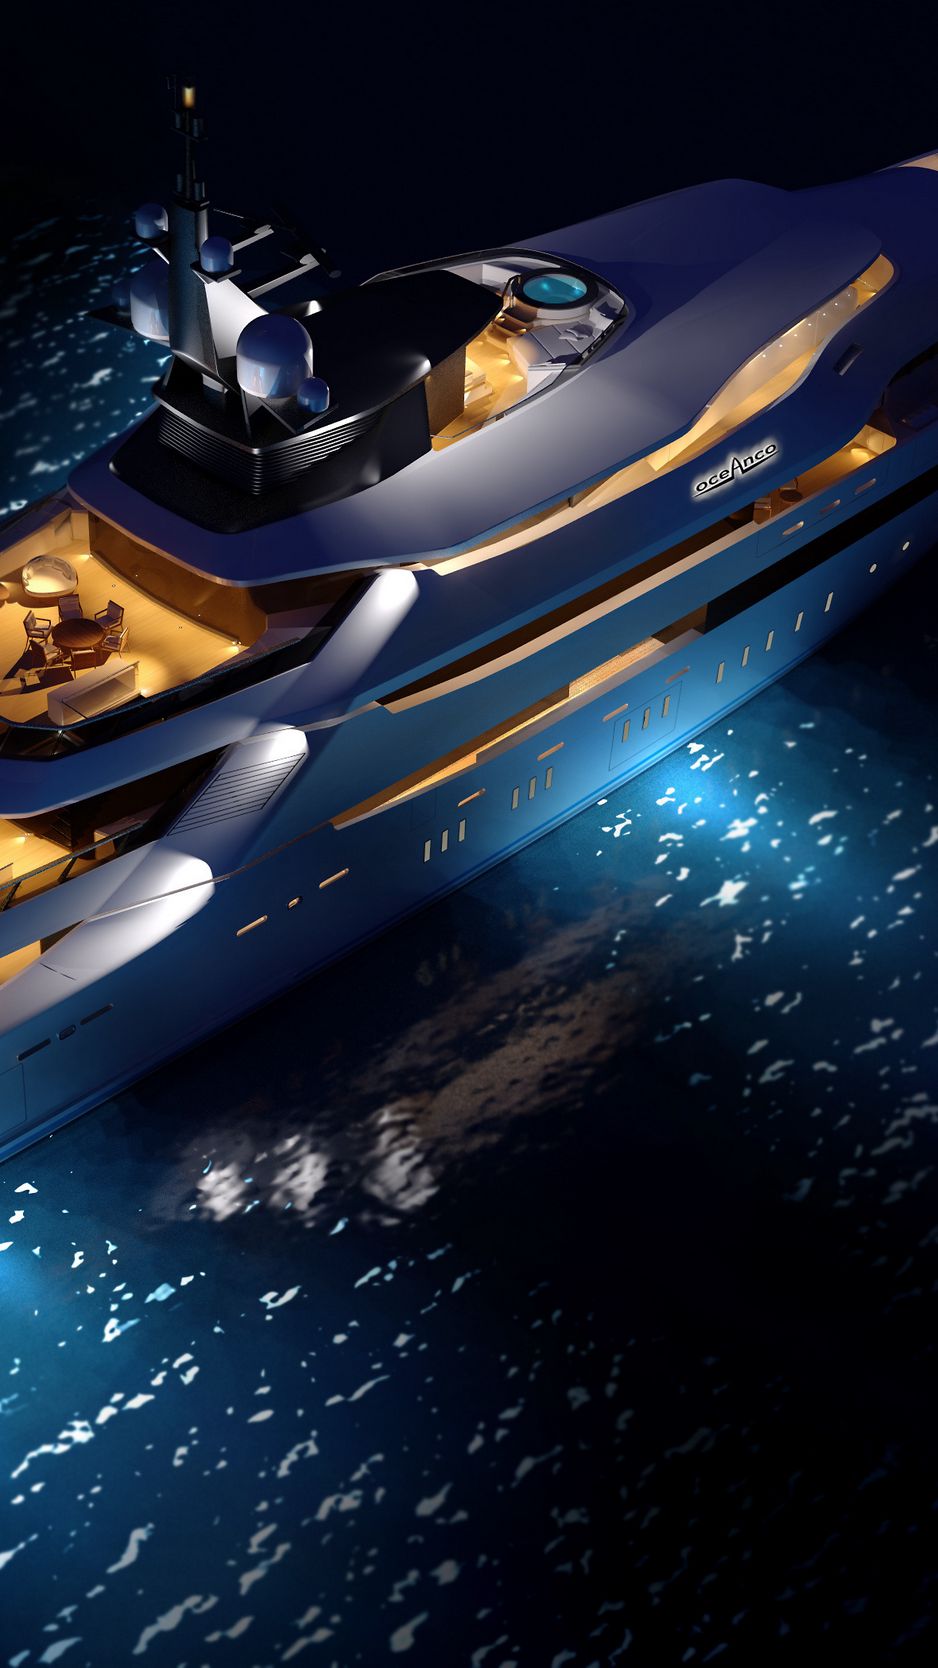 Yacht Concept - một chủ đề đầy thú vị và hiện đại, với những bức ảnh cho thấy cách nhà thiết kế nghĩ ra những chiếc du thuyền tuyệt đẹp. Hãy xem để tìm hiểu những ý tưởng và sáng tạo này.